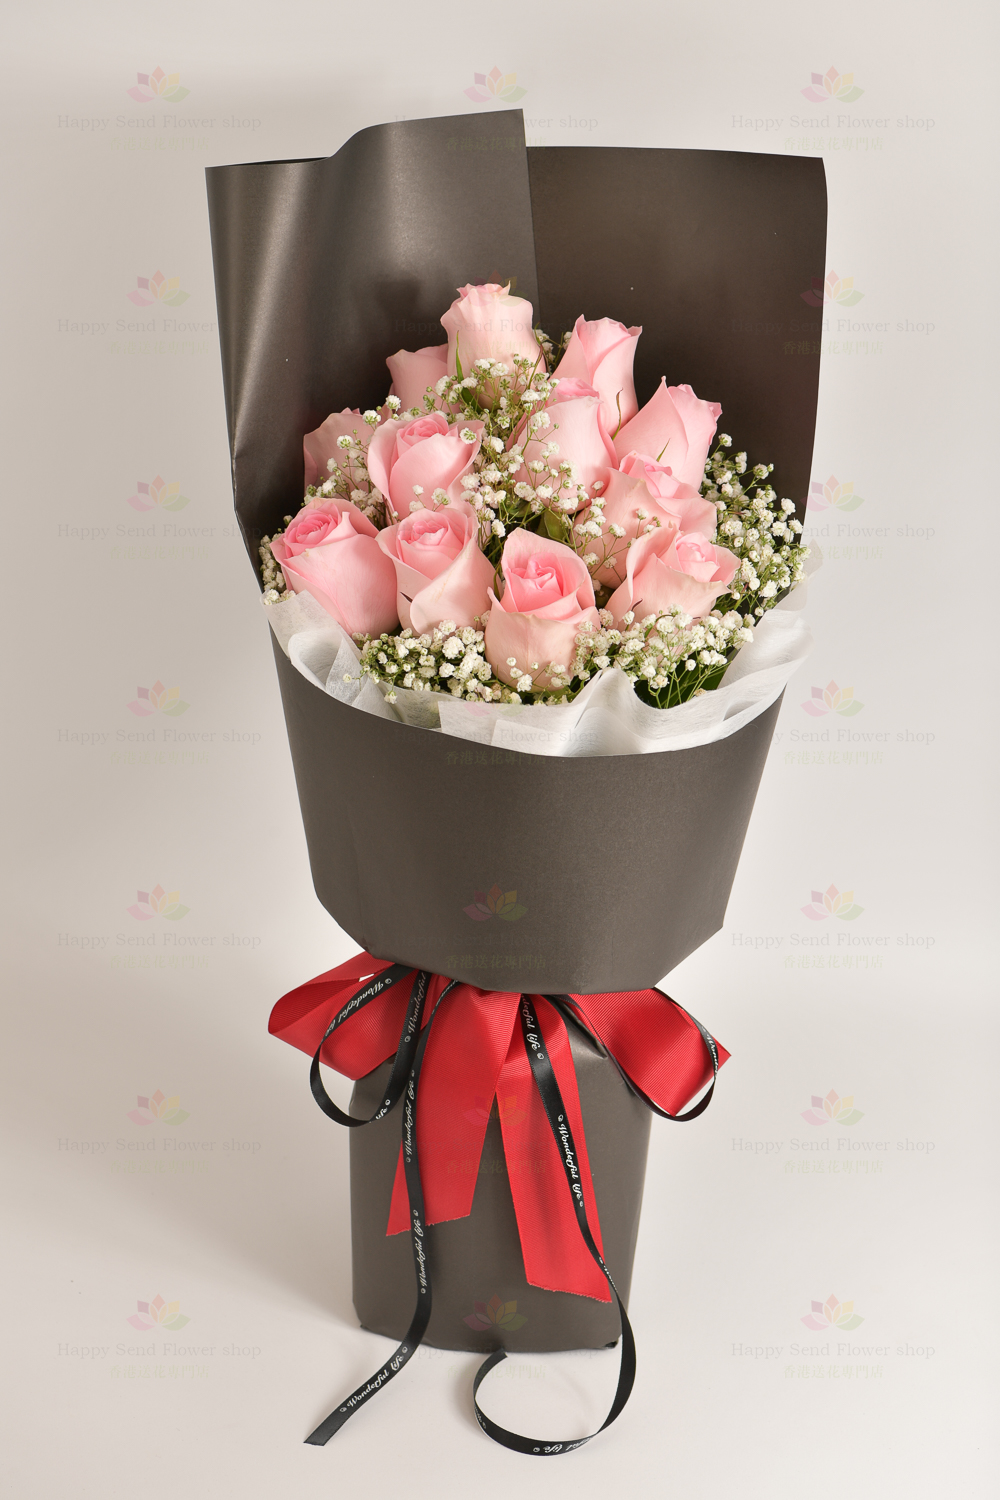 Heroine (12 pink roses, white gypsophila)